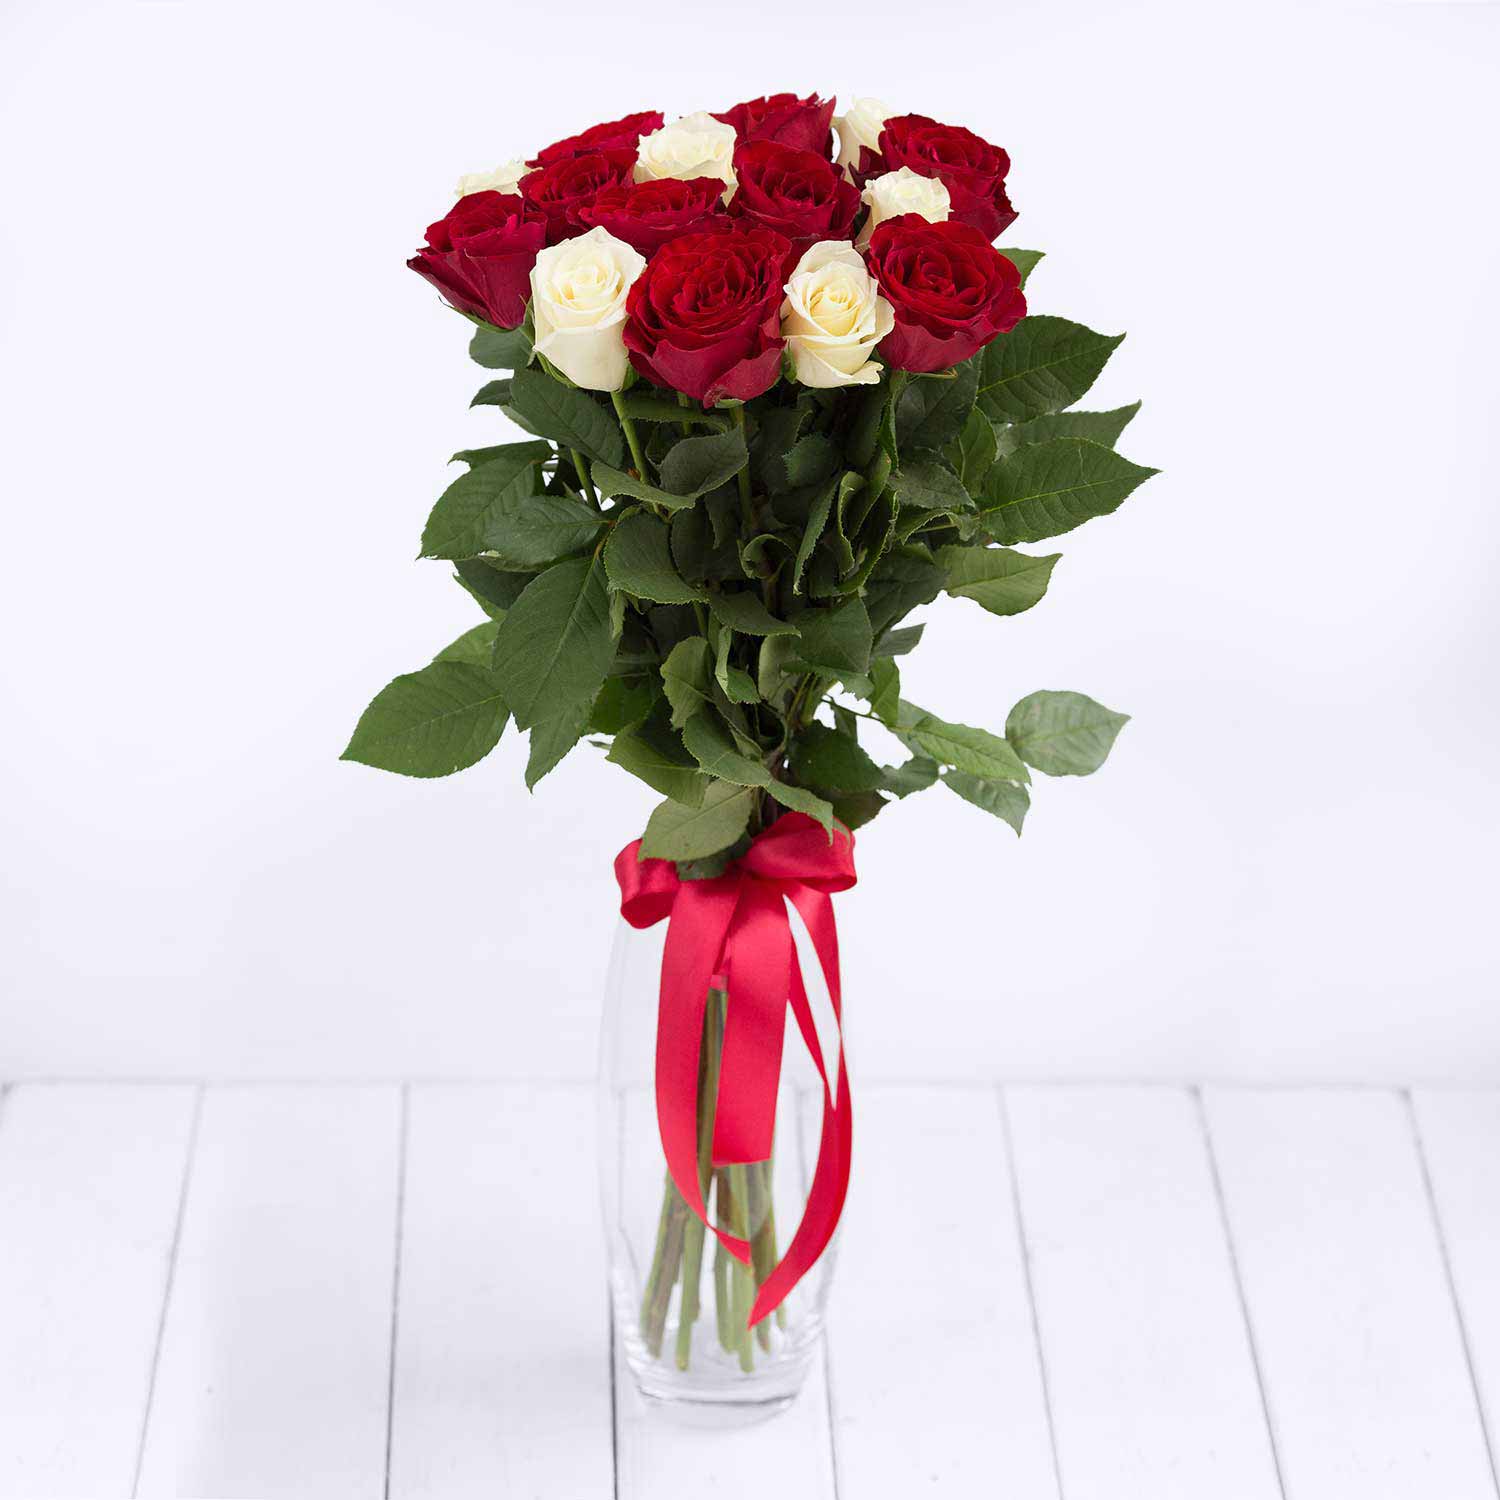 Купить розы поштучно в москве. Красные и белые розы в одном букете.